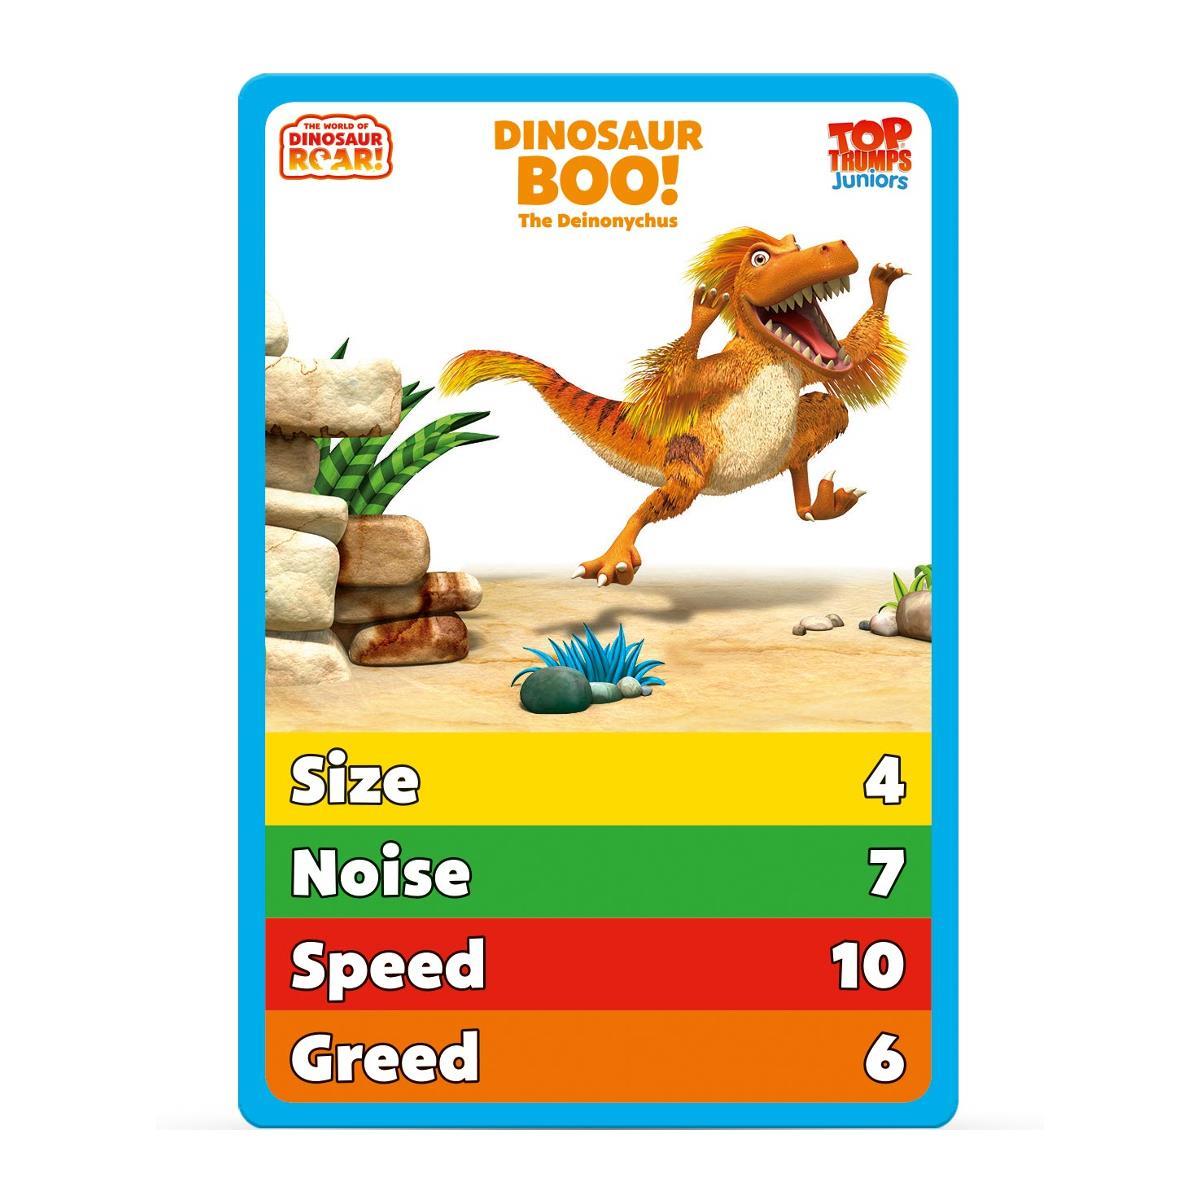 Dinosaur Roar Top Trumps Junior Card Game